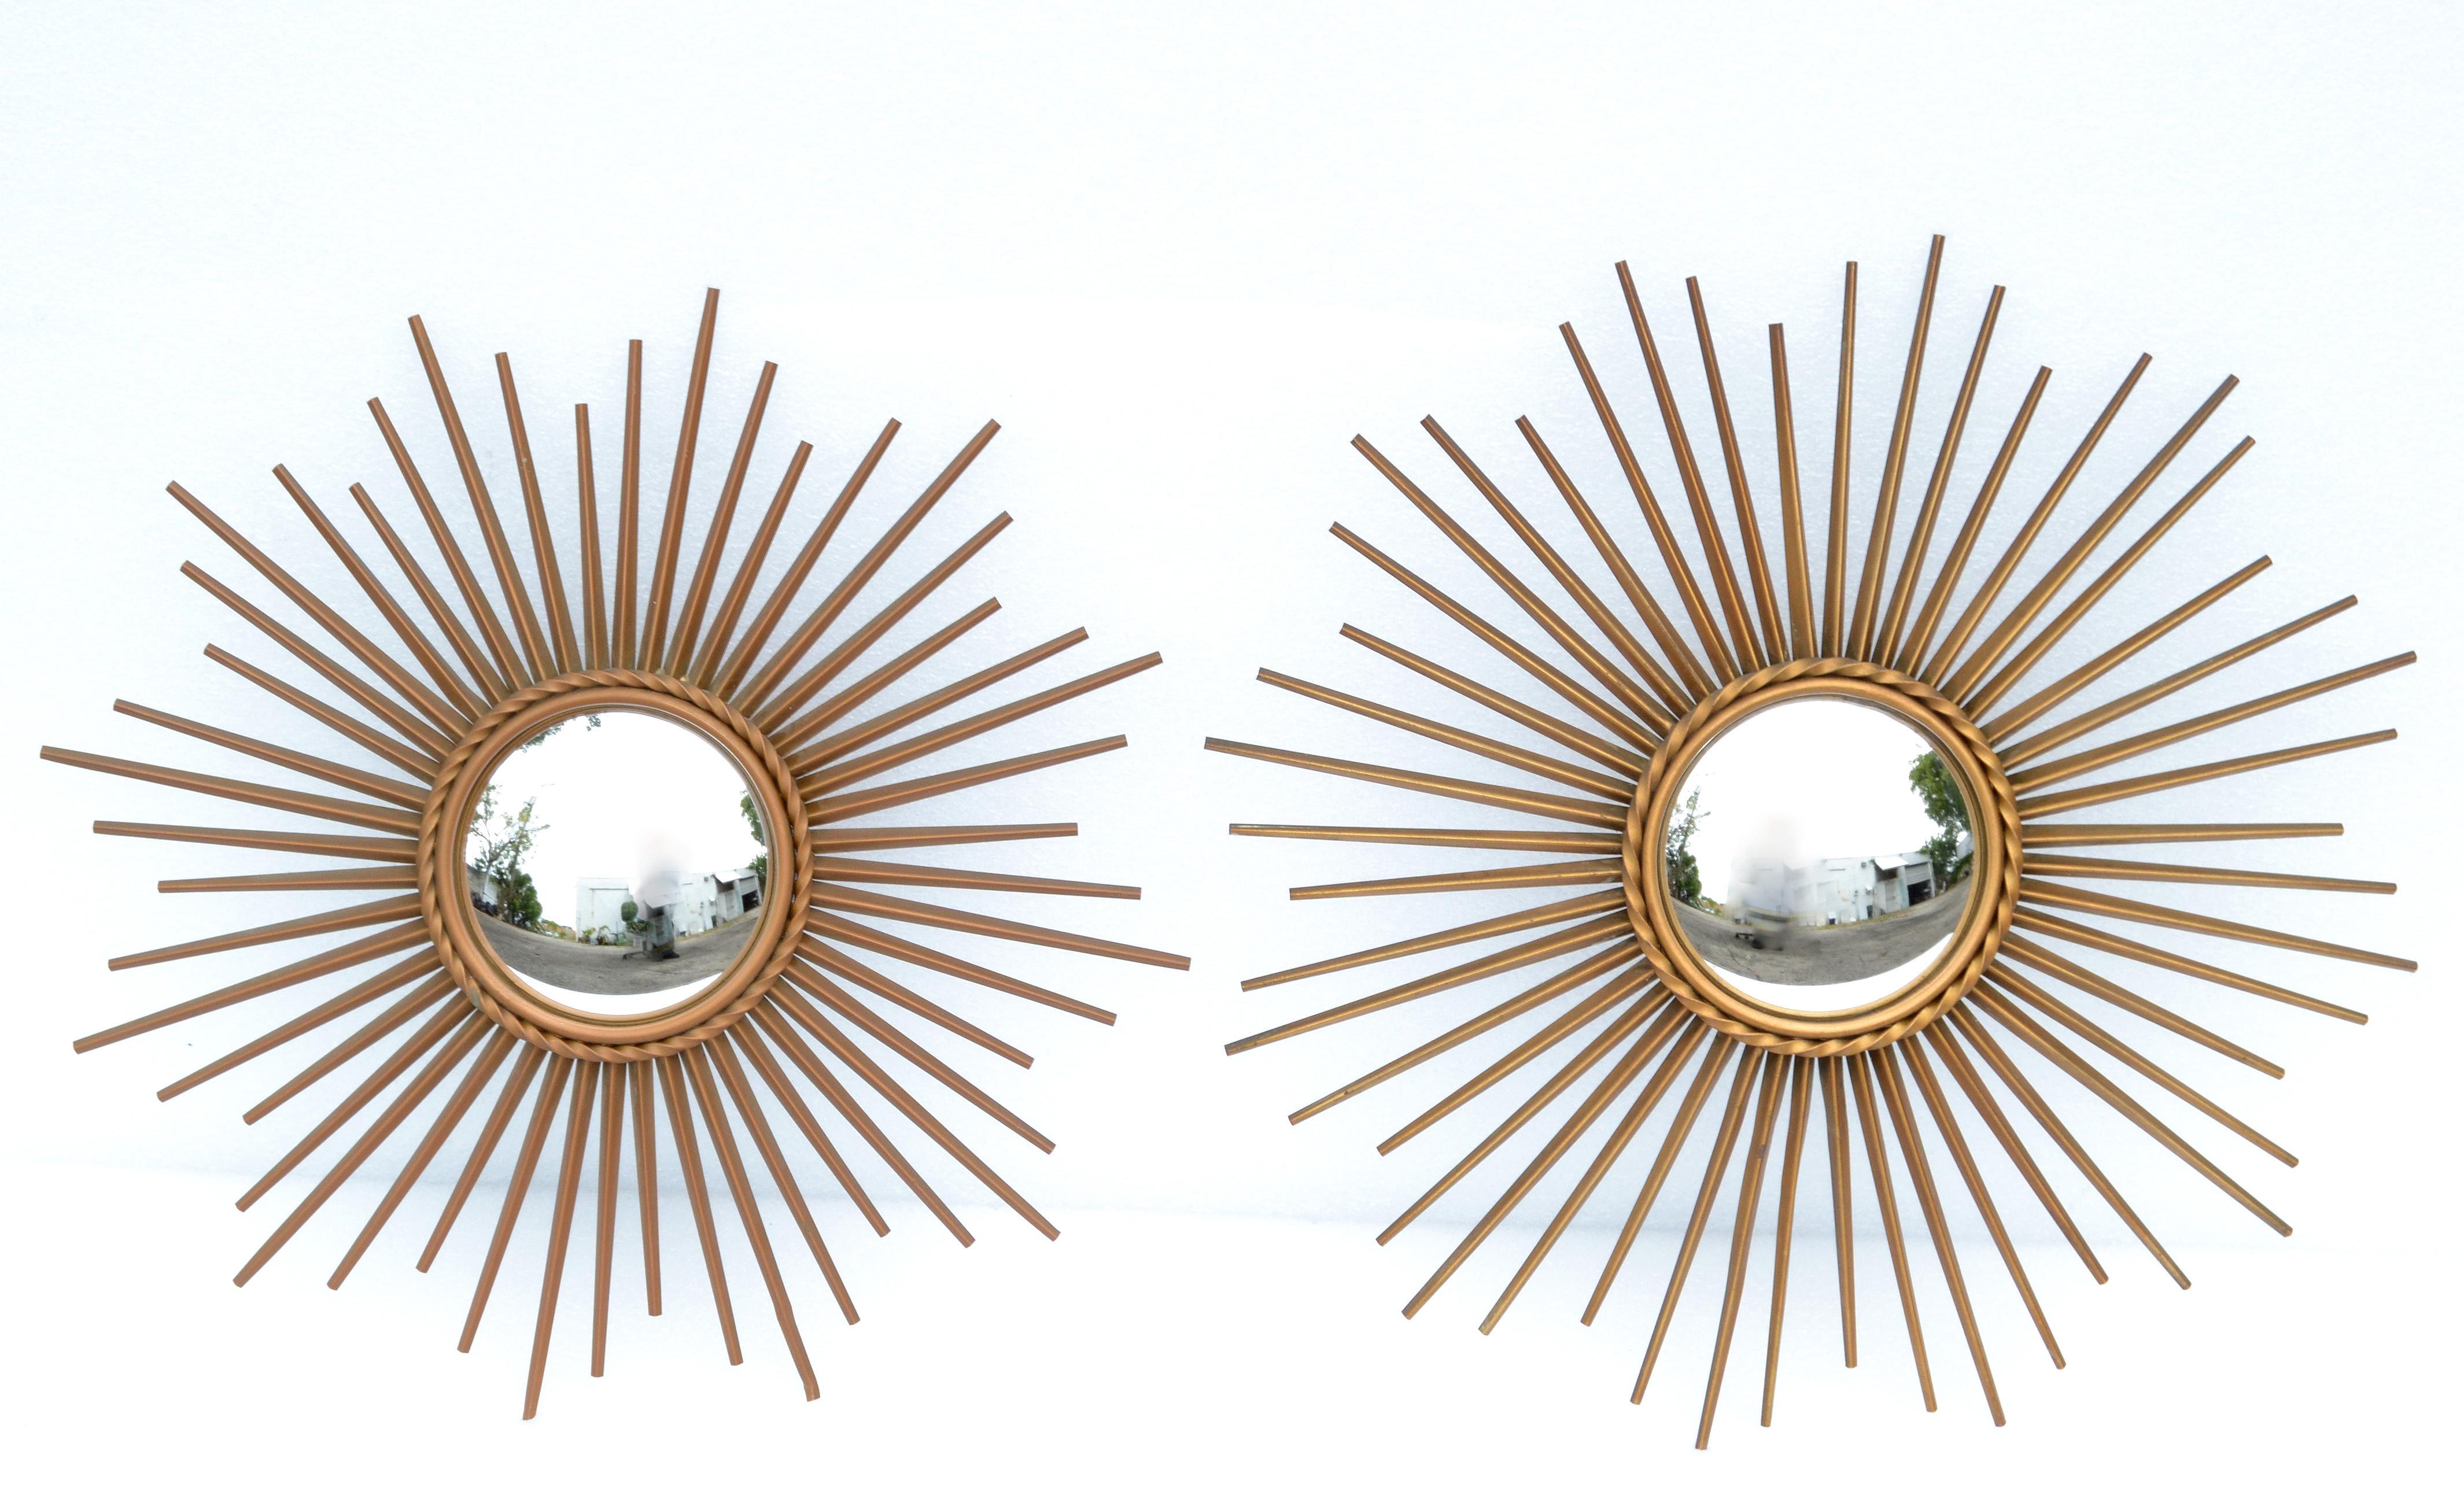 Zwei 19,5 Zoll Durchmesser Französisch Mid-Century Modern konvexen Sonnenschliff Spiegel von Chaty Vallauris und in den 1970er Jahren gemacht.
Atemberaubende handgefertigte Eisen überlagert in Messing-Finish mit einem 5,5 Zoll konvexen Spiegel in